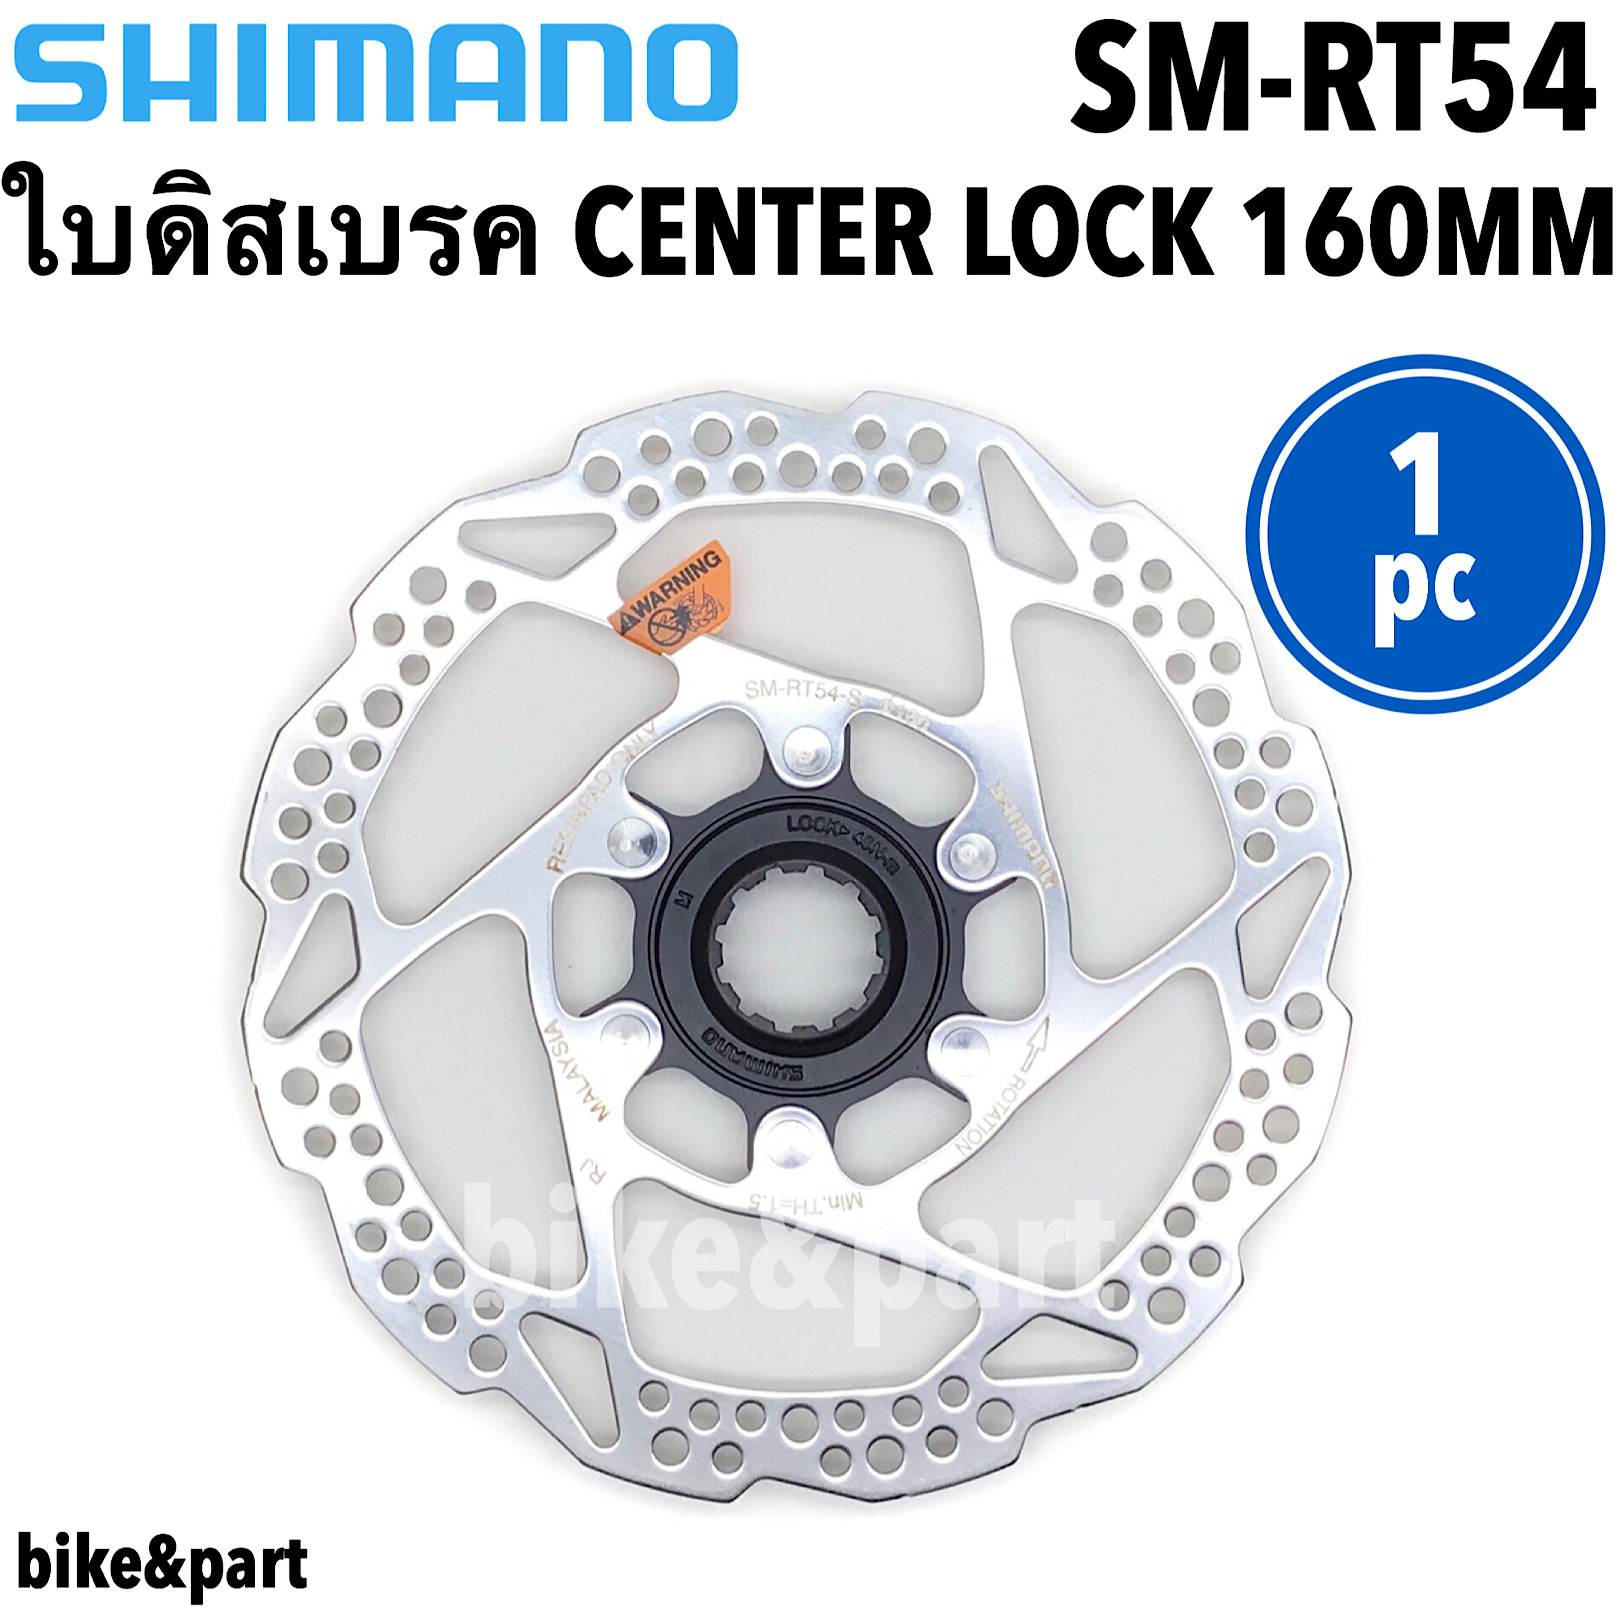 ใบดิสเบรค จักรยาน CENTER LOCK SHIMANO SM-RT54 160mm 1pc